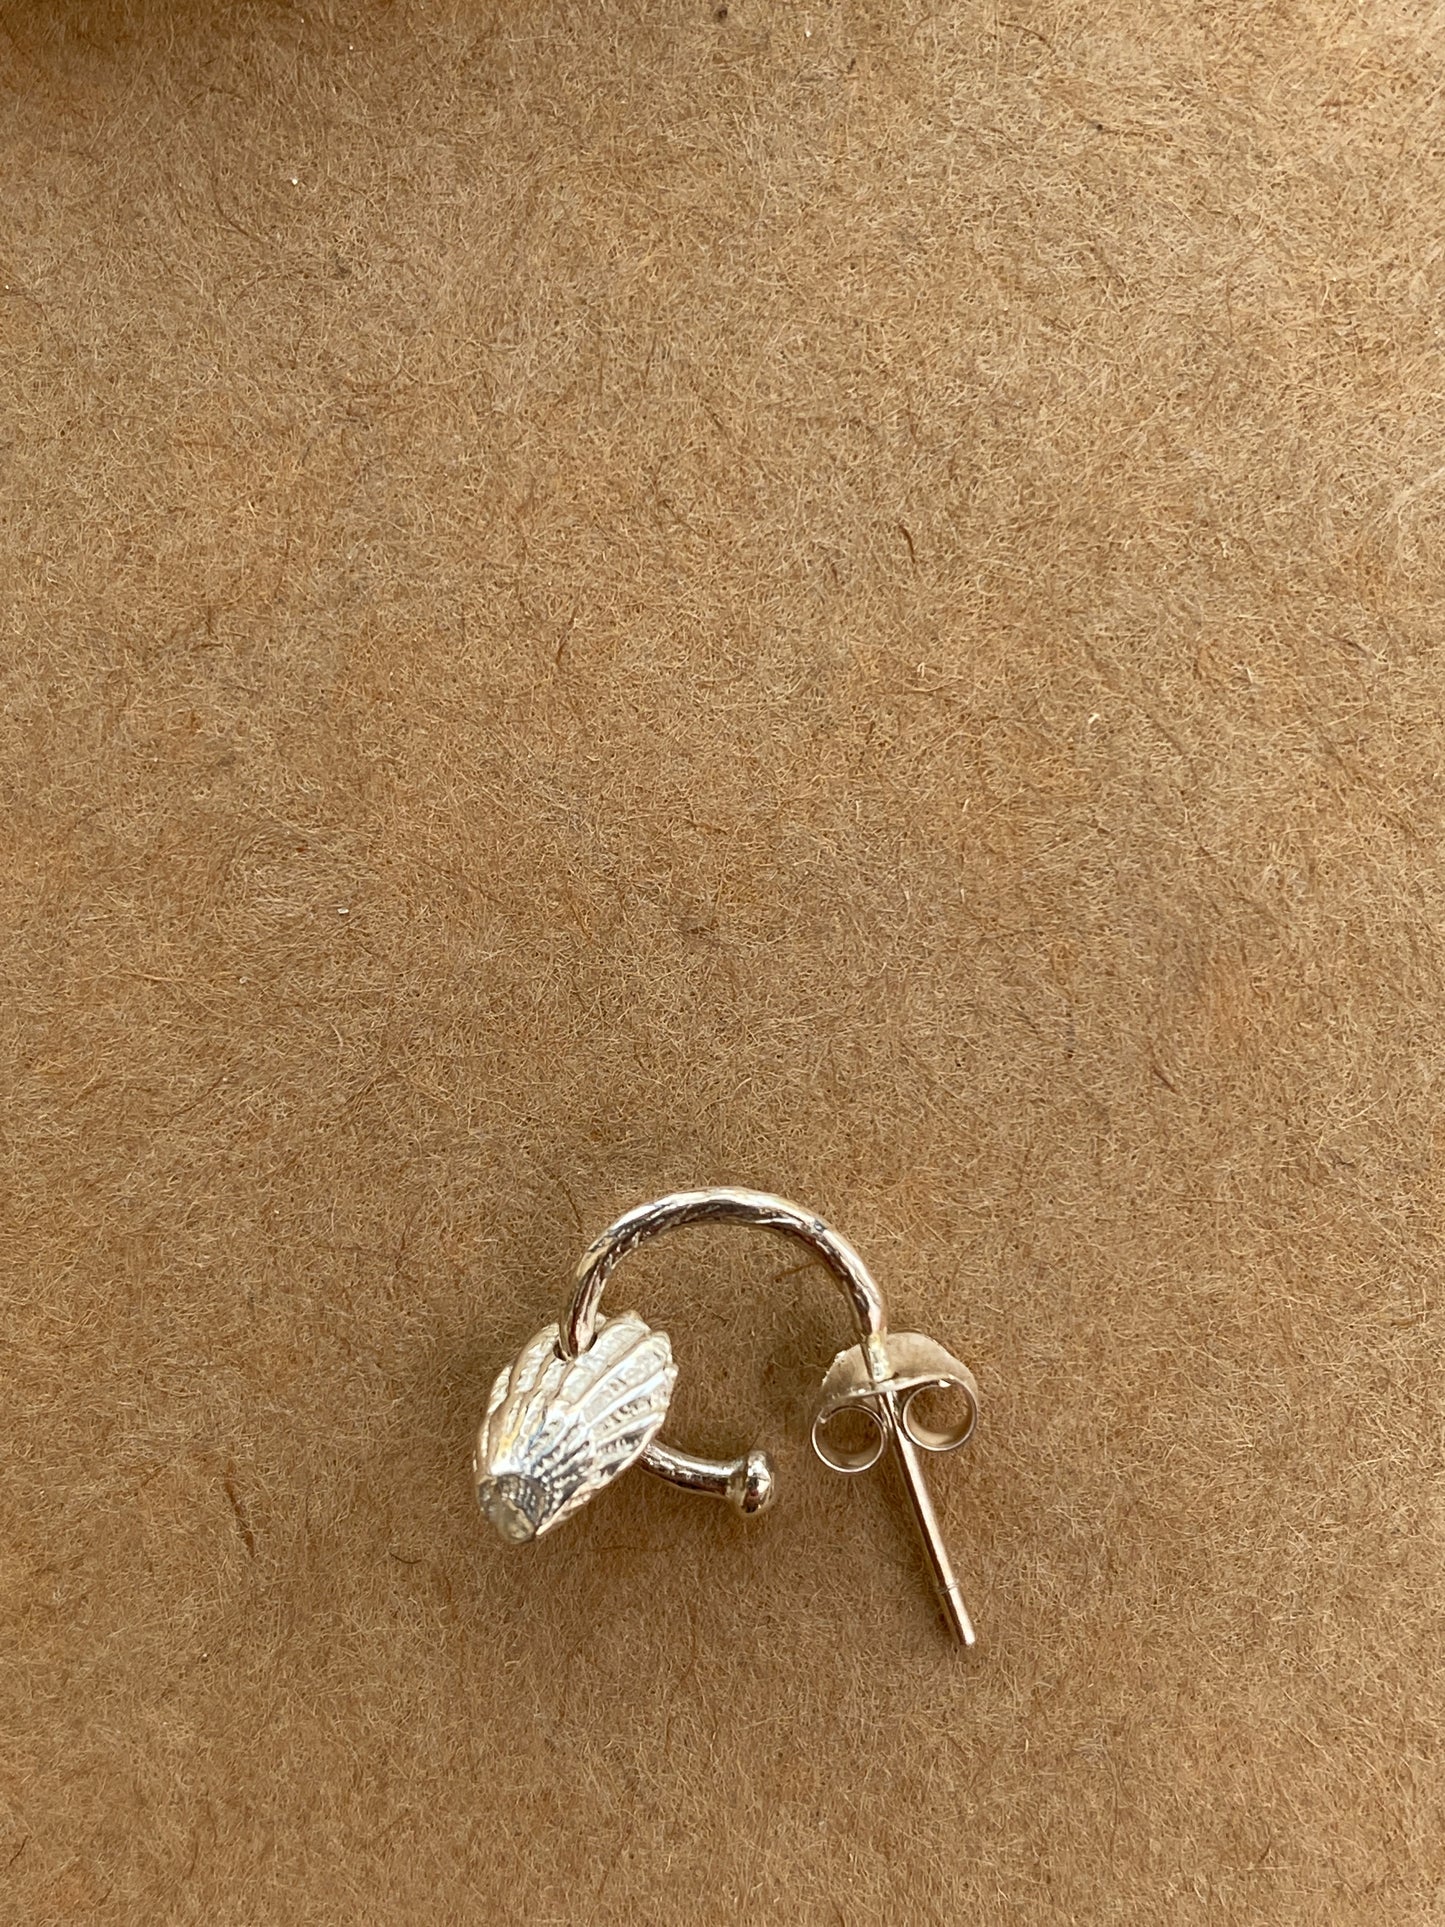 Bali Shell Earrings Loops in Silver